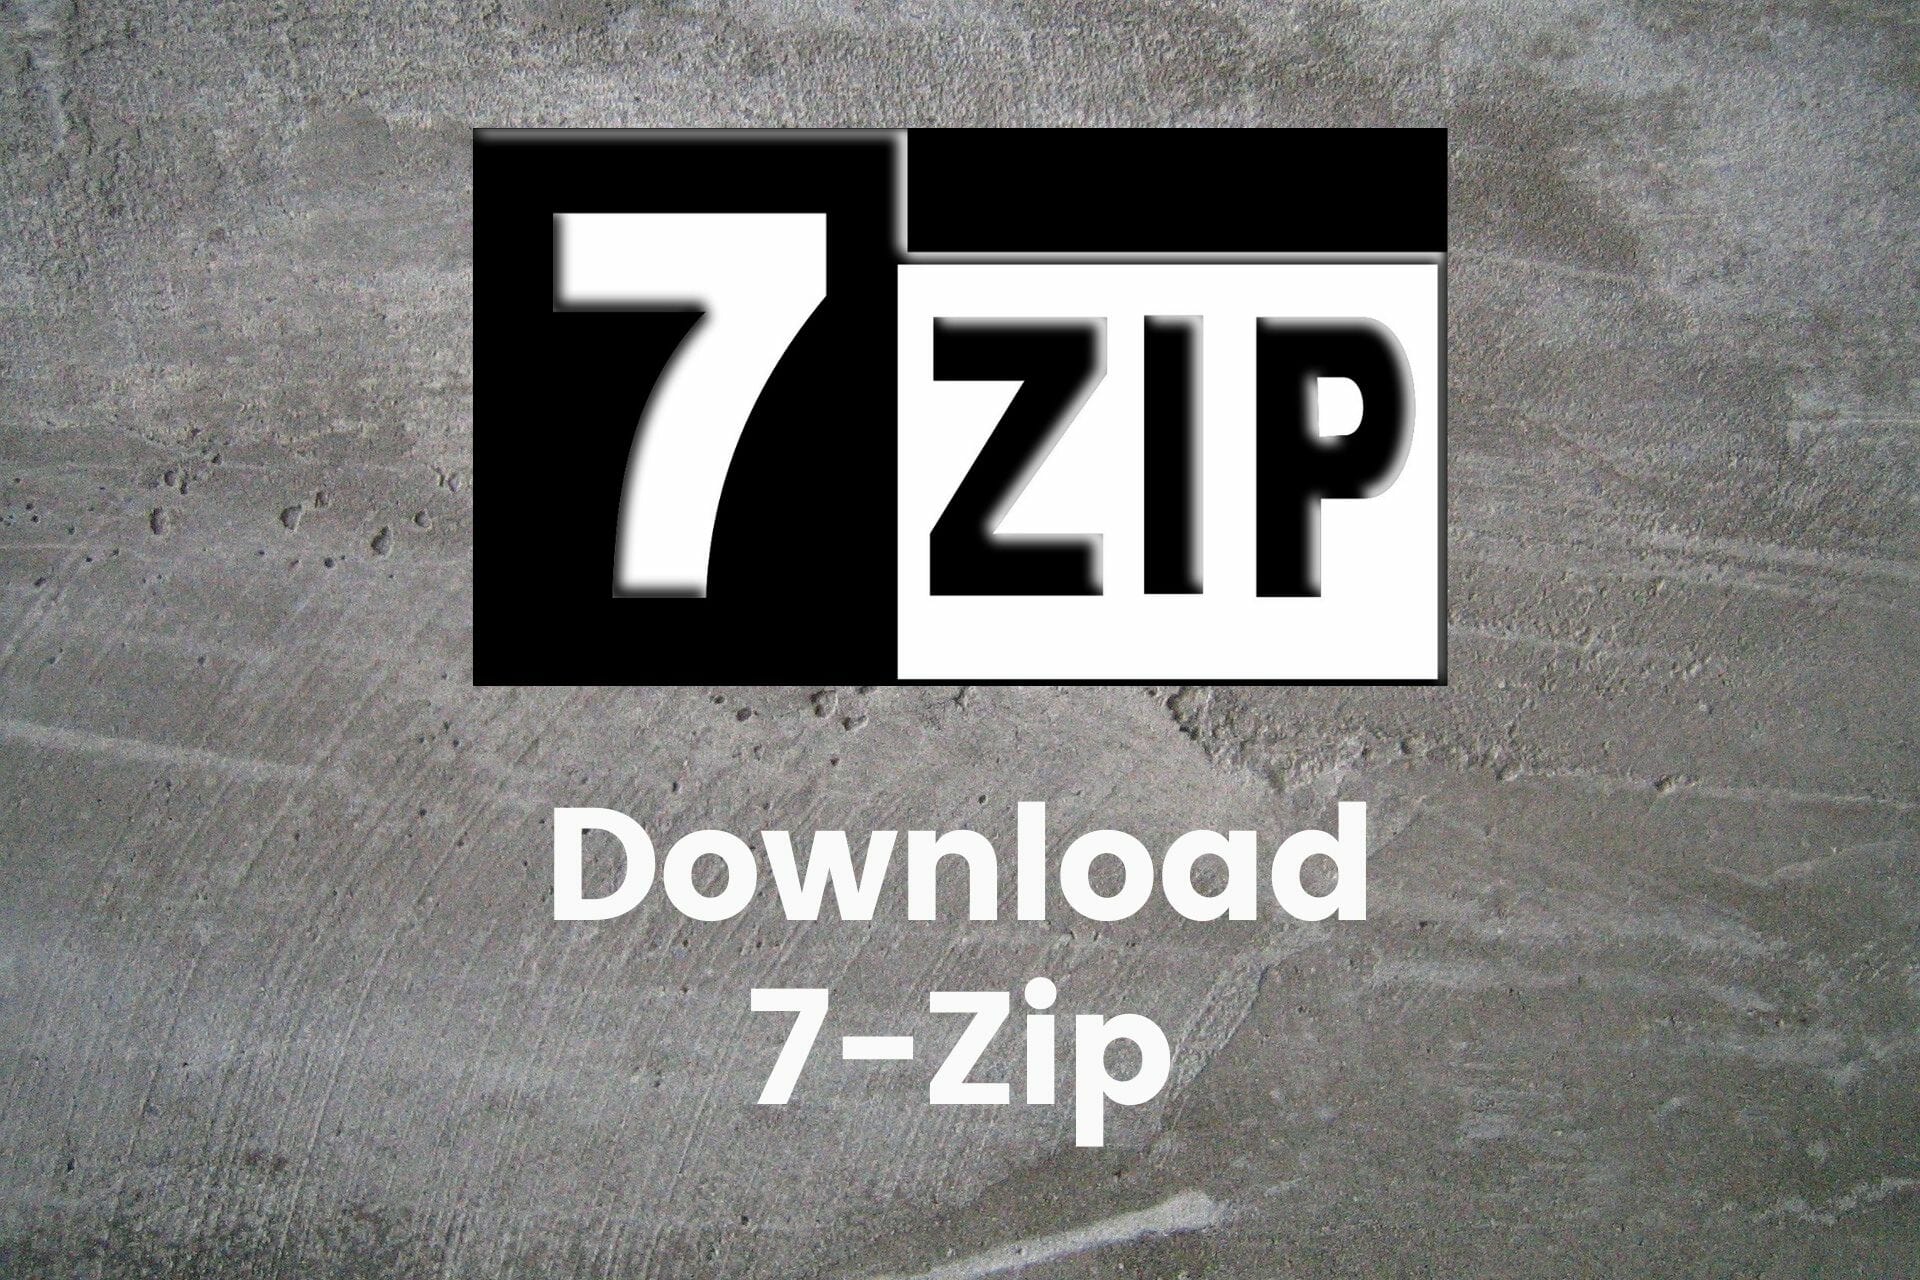 playdownstation 7zip download